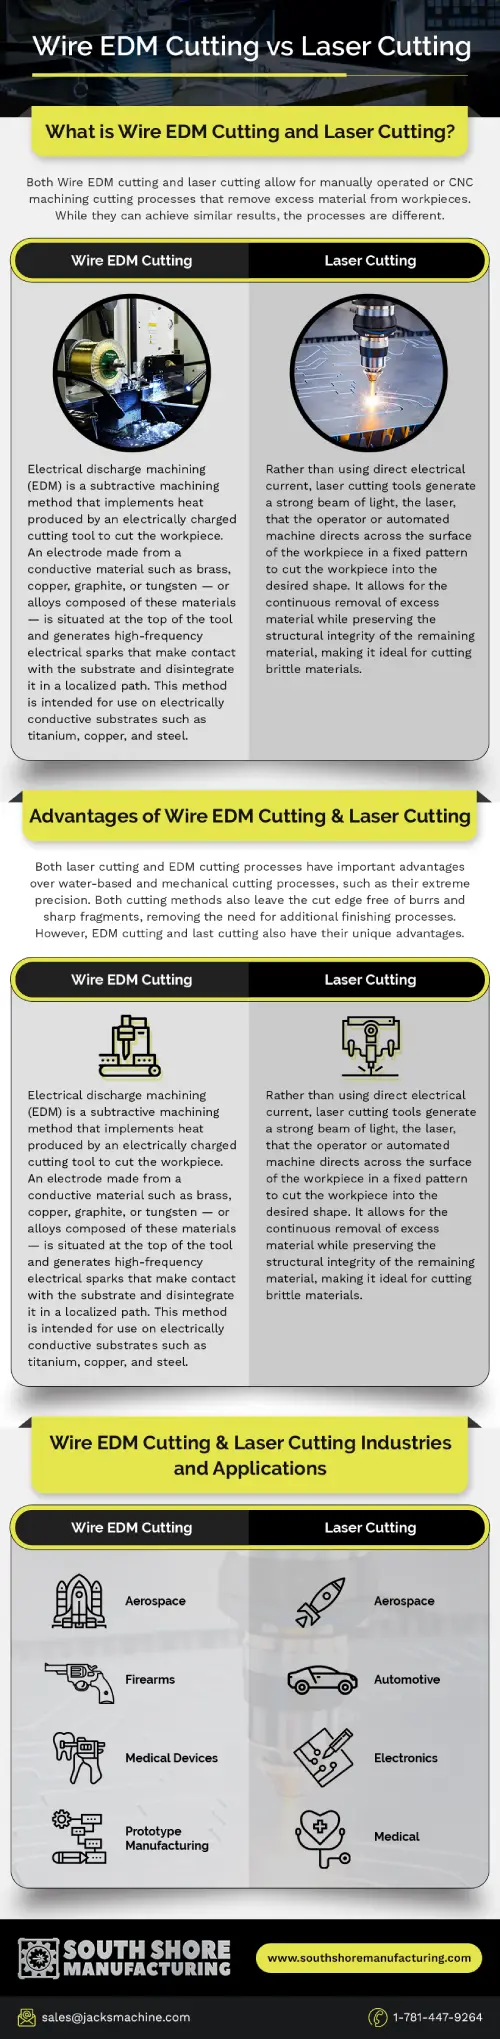 Wire EDM vs Laser